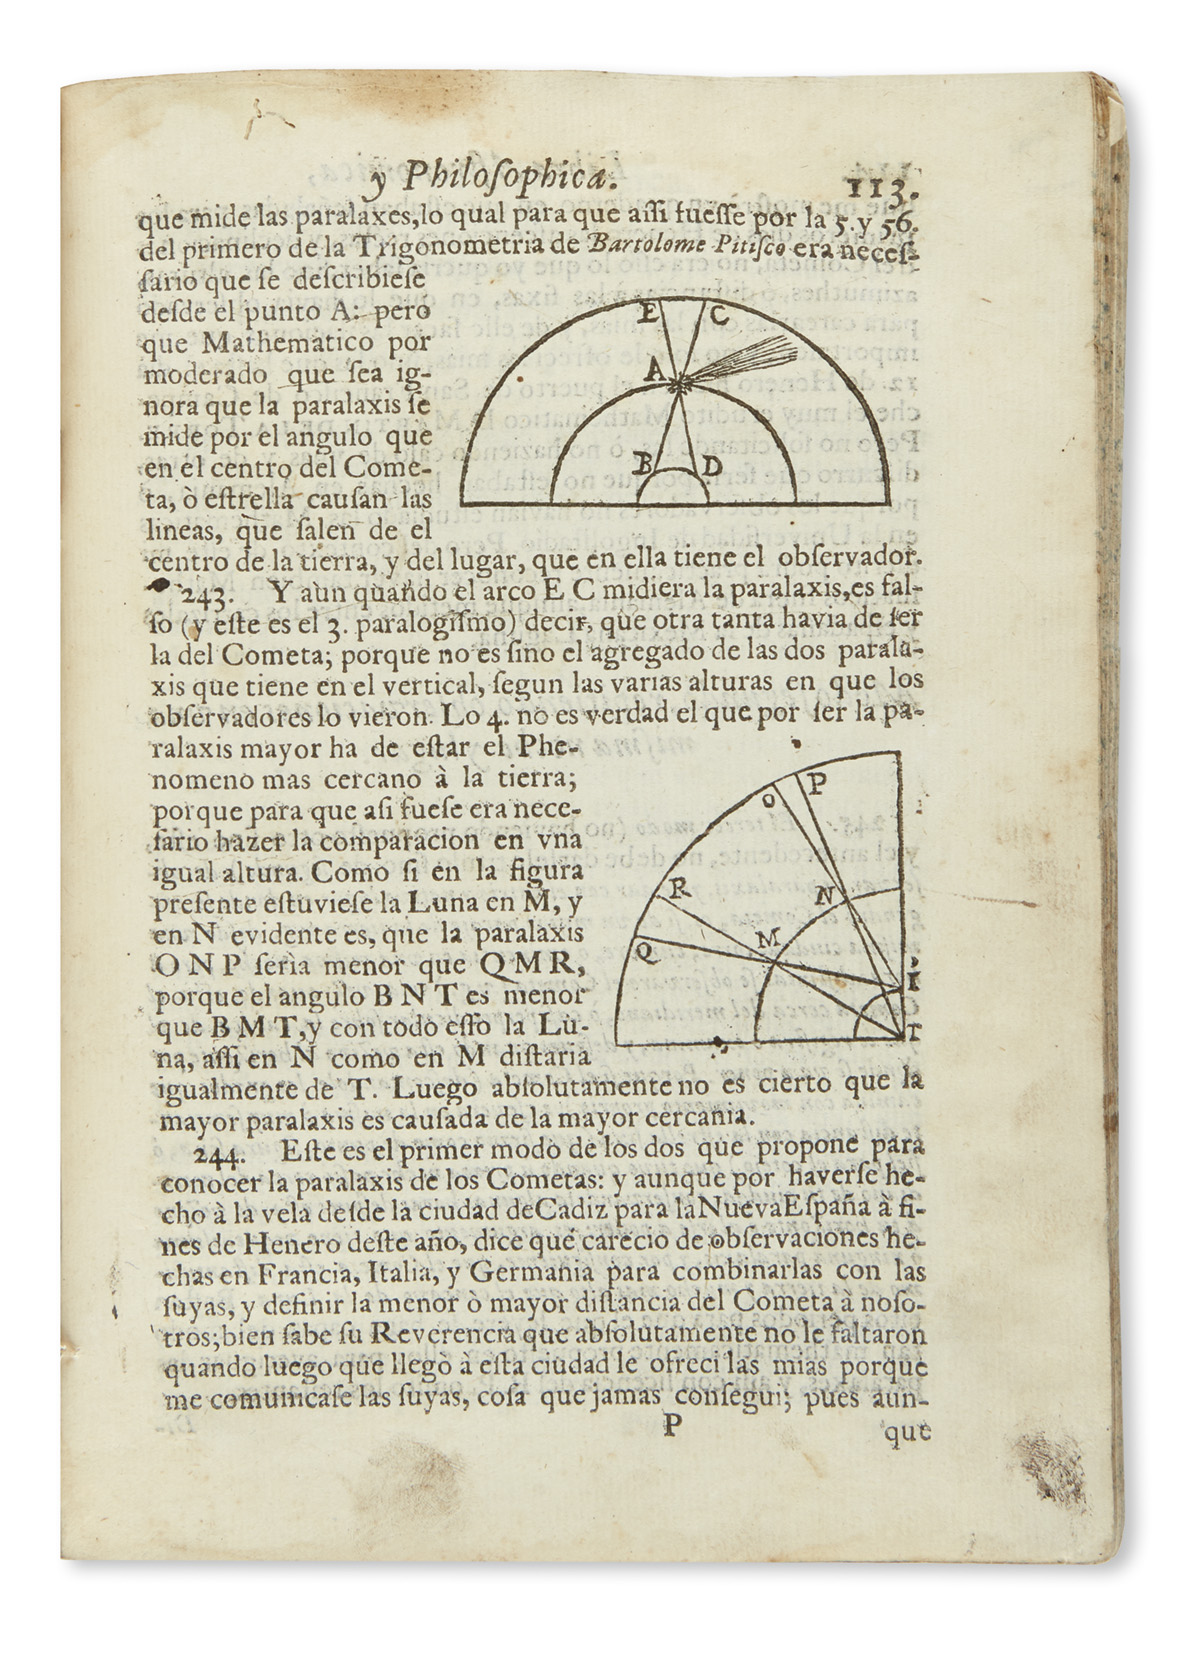 (MEXICAN IMPRINT--1690.) [Sigüenza y Góngora, Carlos de.] [Libra astronomica, y philosophica.]